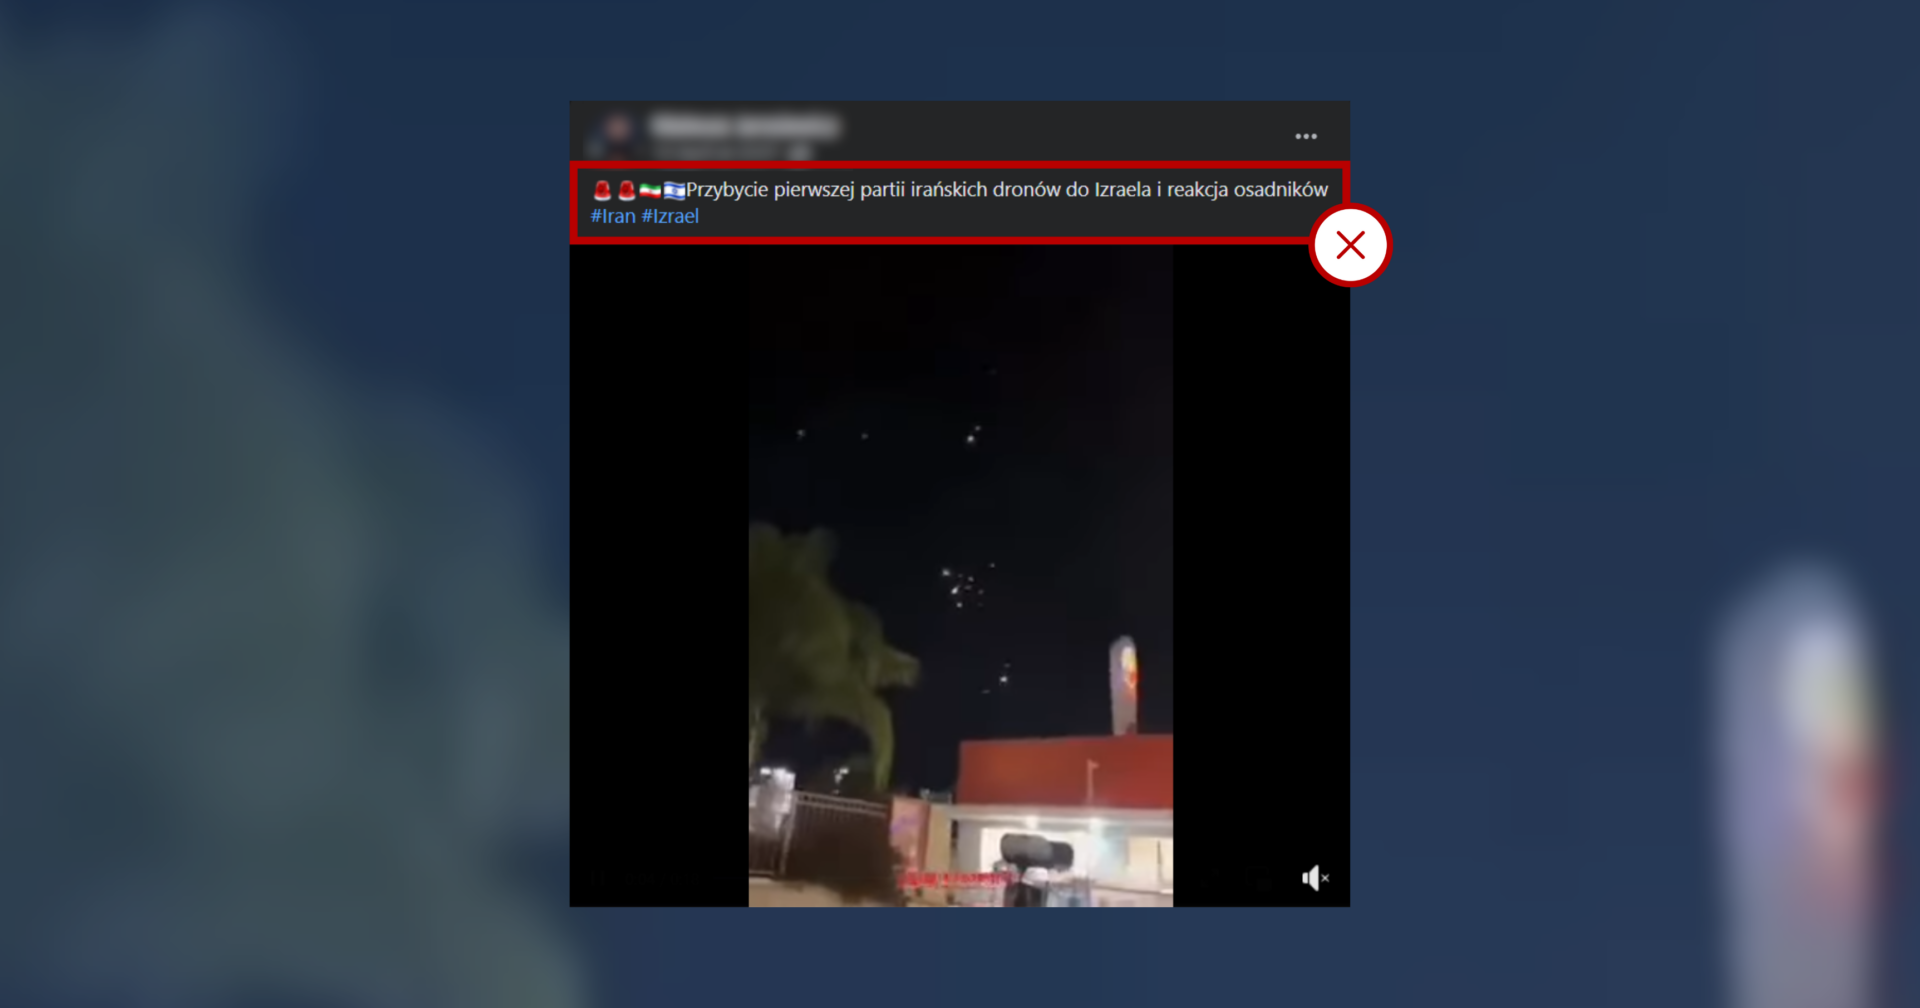 Screenshot posta powielającego nieprawdziwe informacje związane z irańskim atakiem na Izrael. Dołączone do wpisu nagranie jest z zeszłego roku.